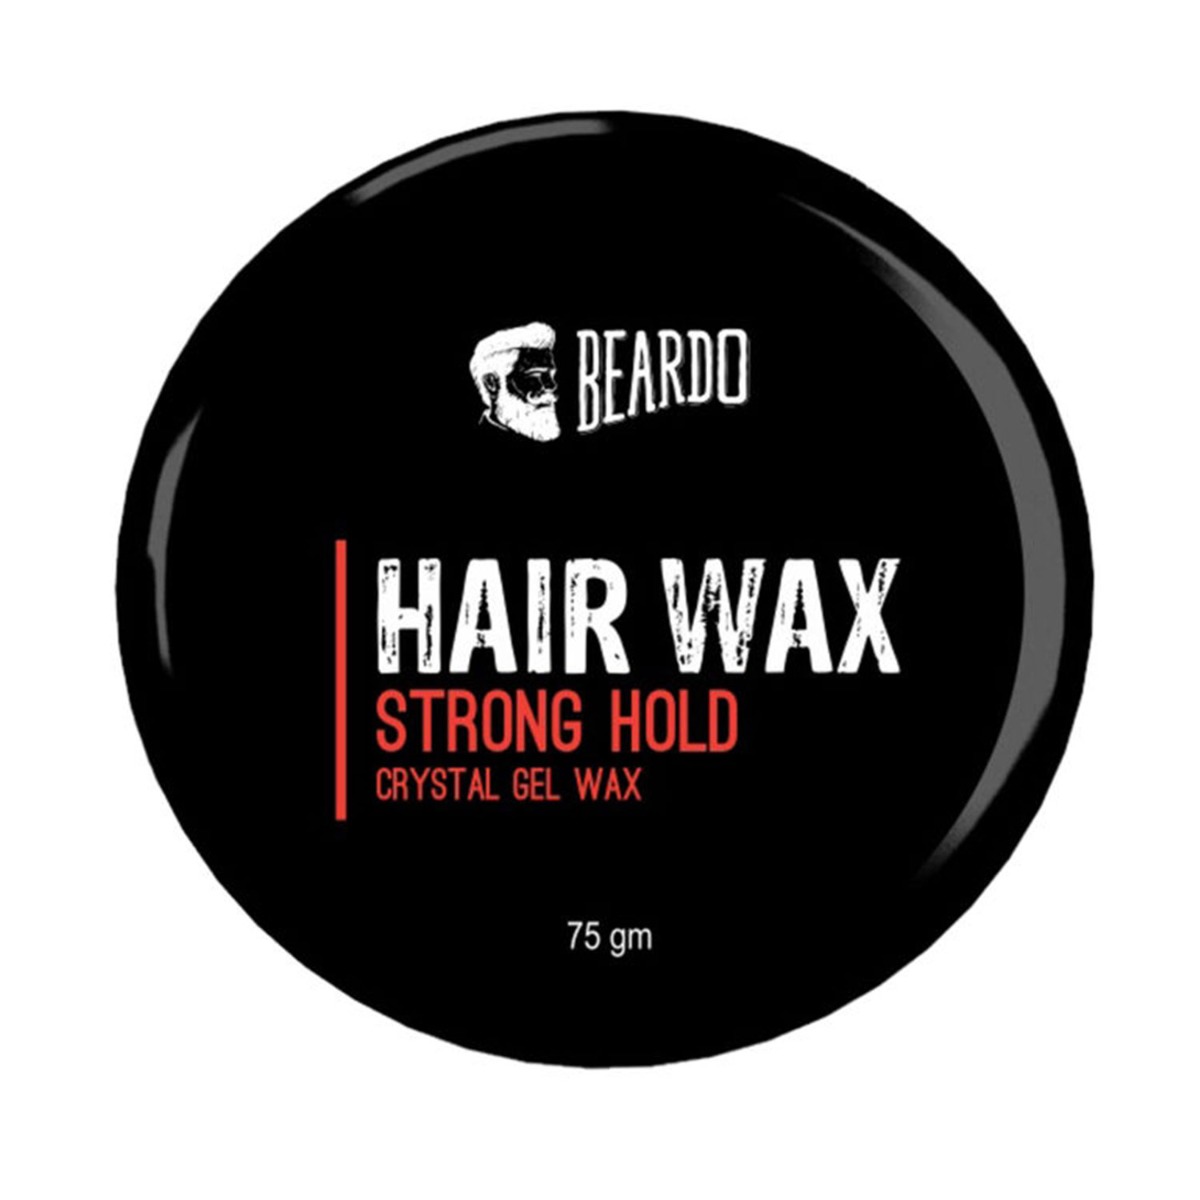 Beardo Hair Wax Strong Hold Crystal Gel Wax, 75gm